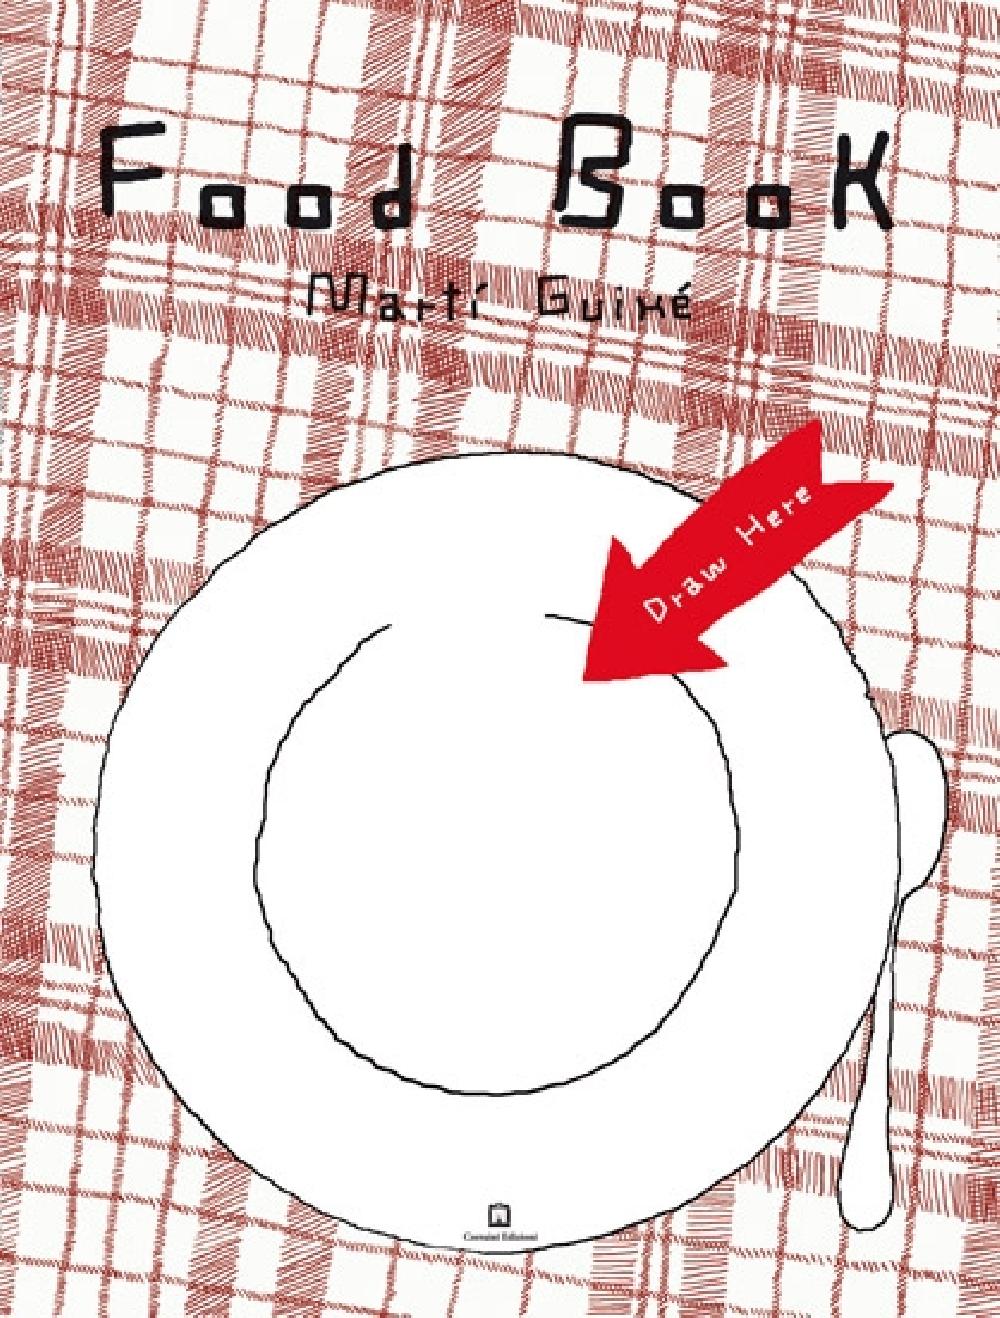 Food Book